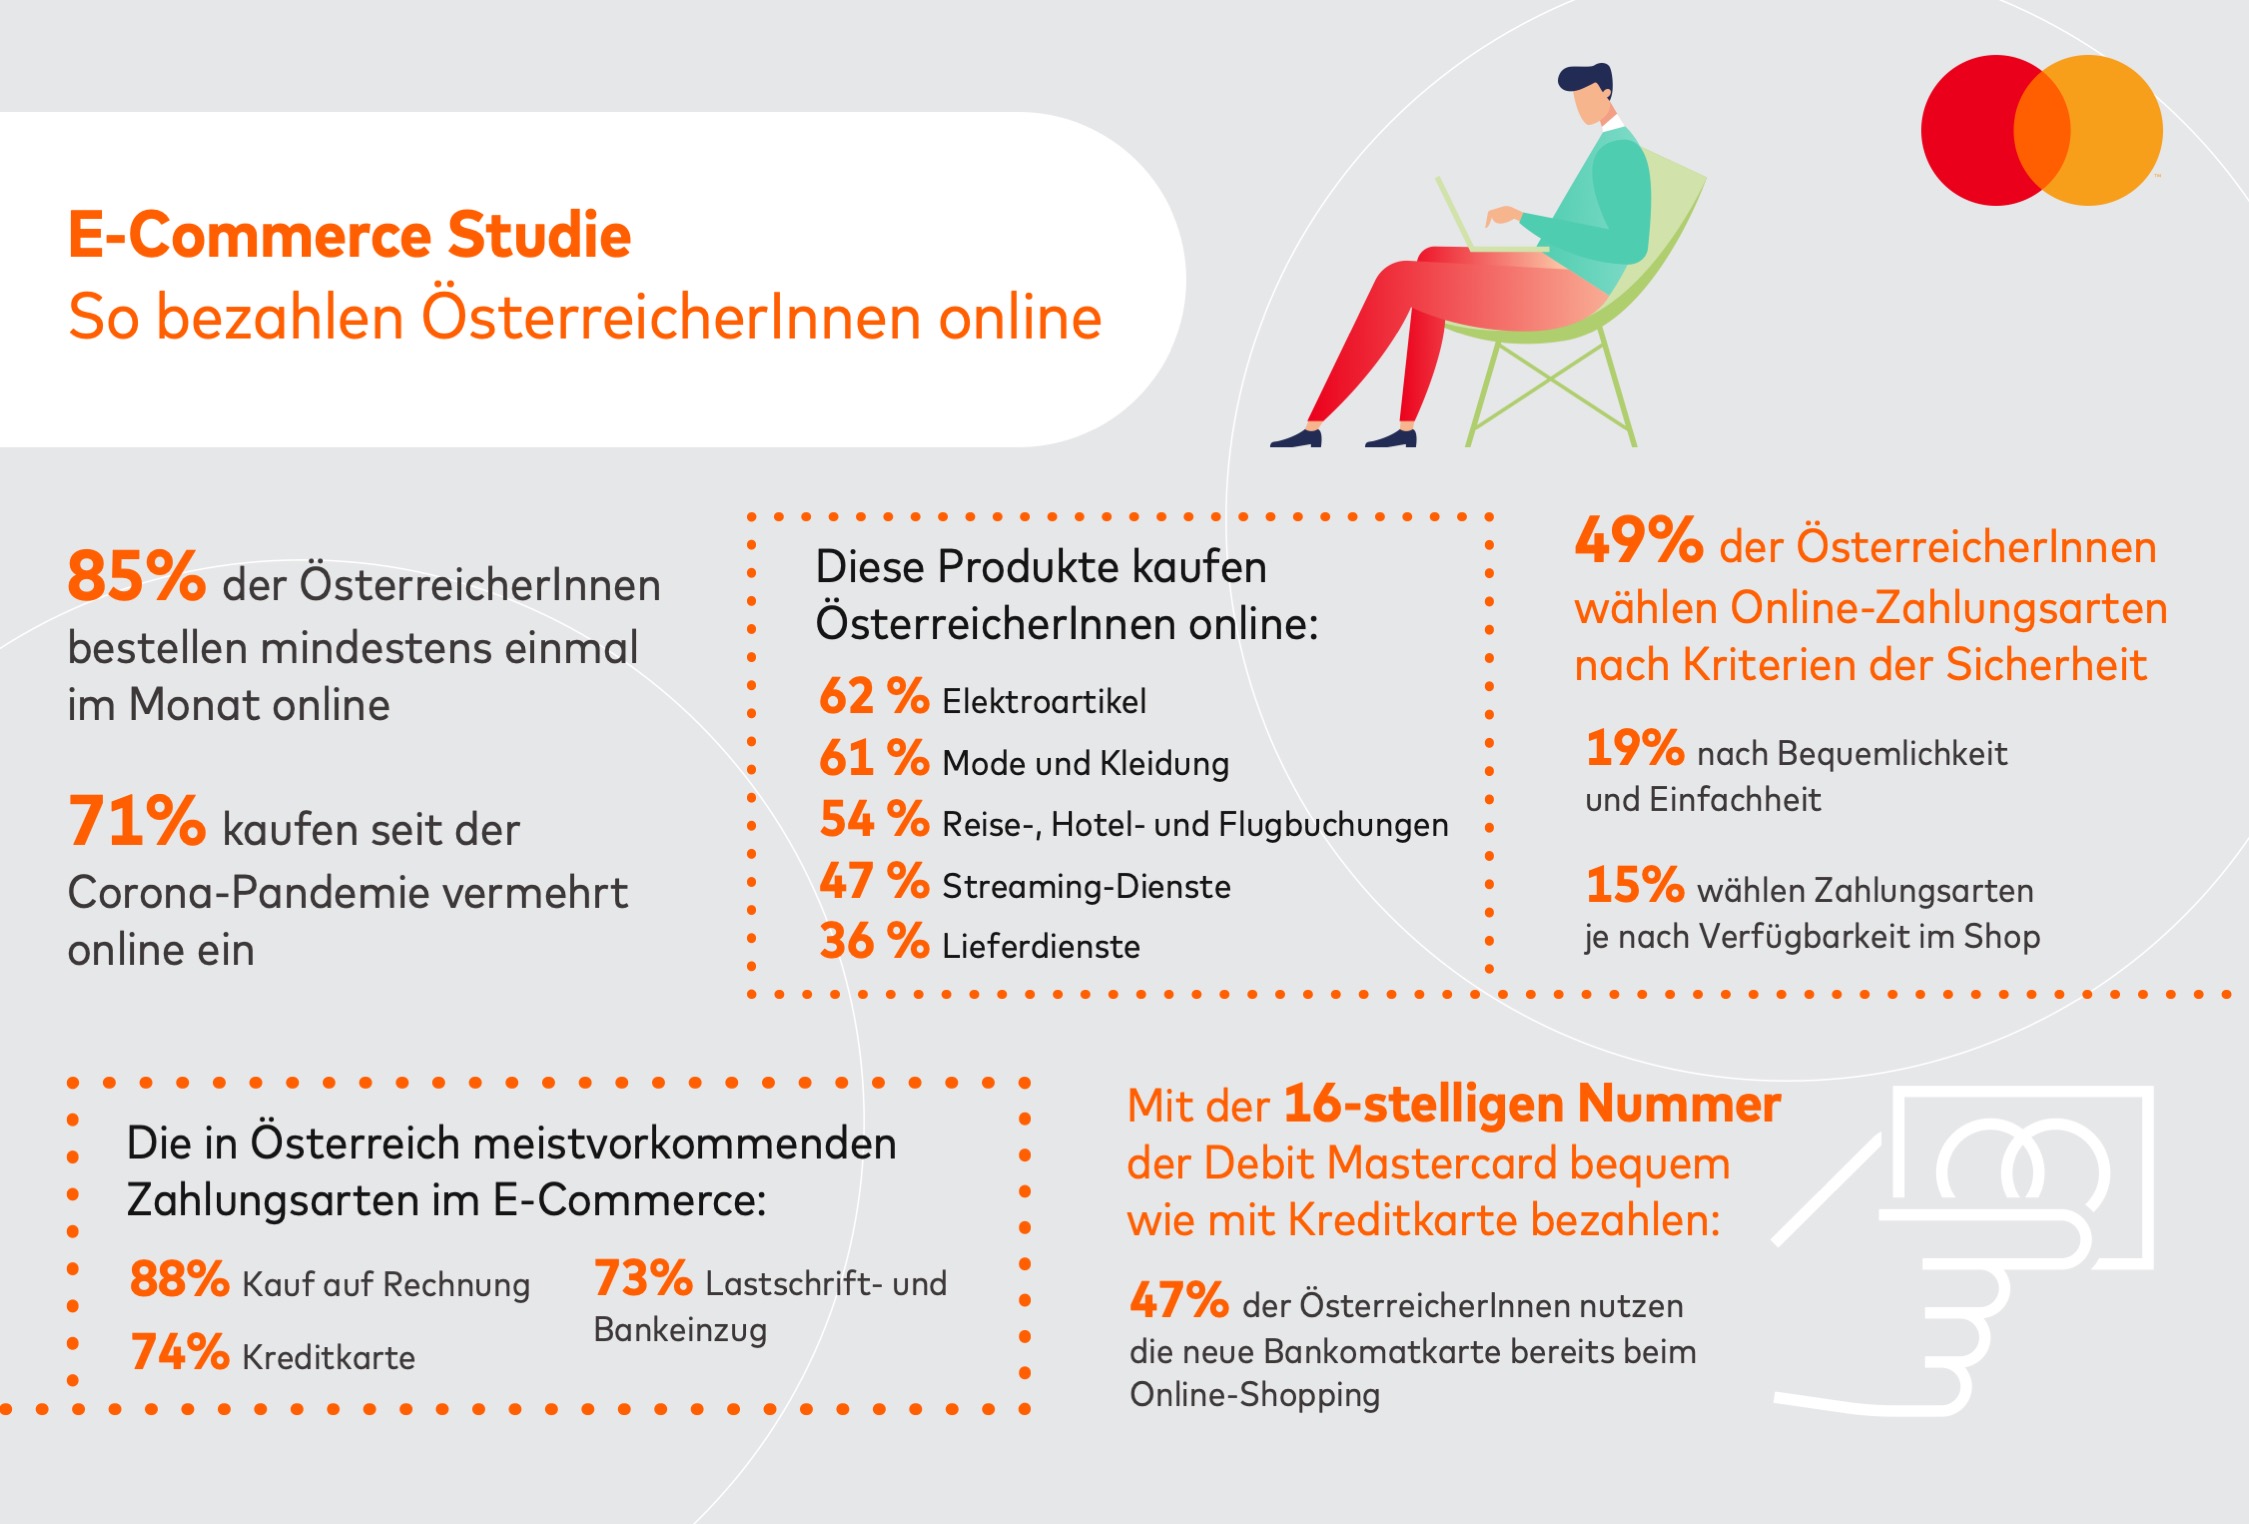 85 % der ÖsterreicherInnen shoppen regelmäßig online